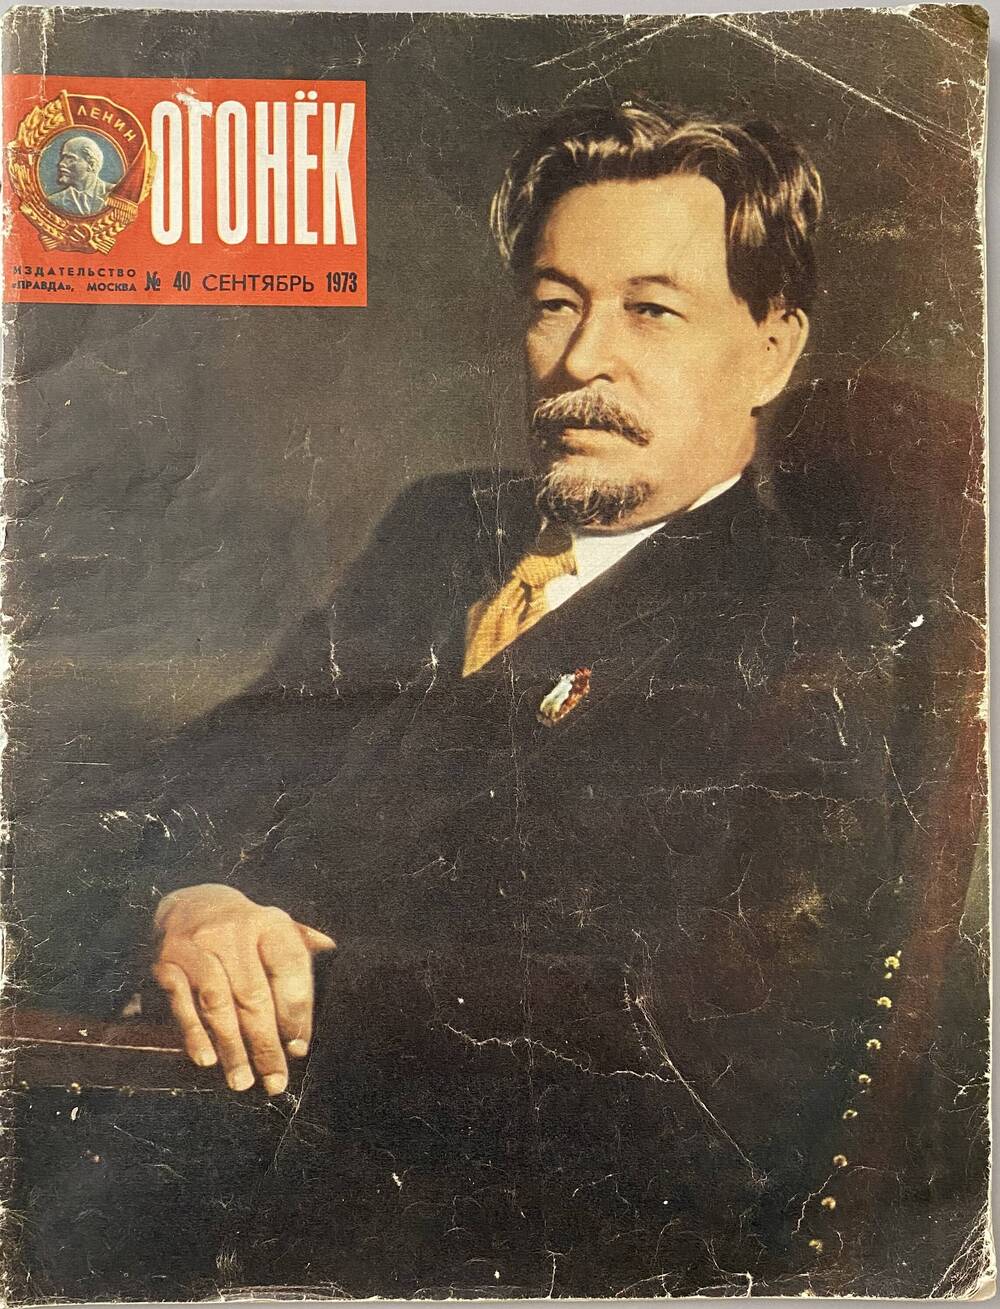 Журнал «Огонёк» № 40, сентябрь 1973 г. Издательство «Правда», Москва, 32 с.